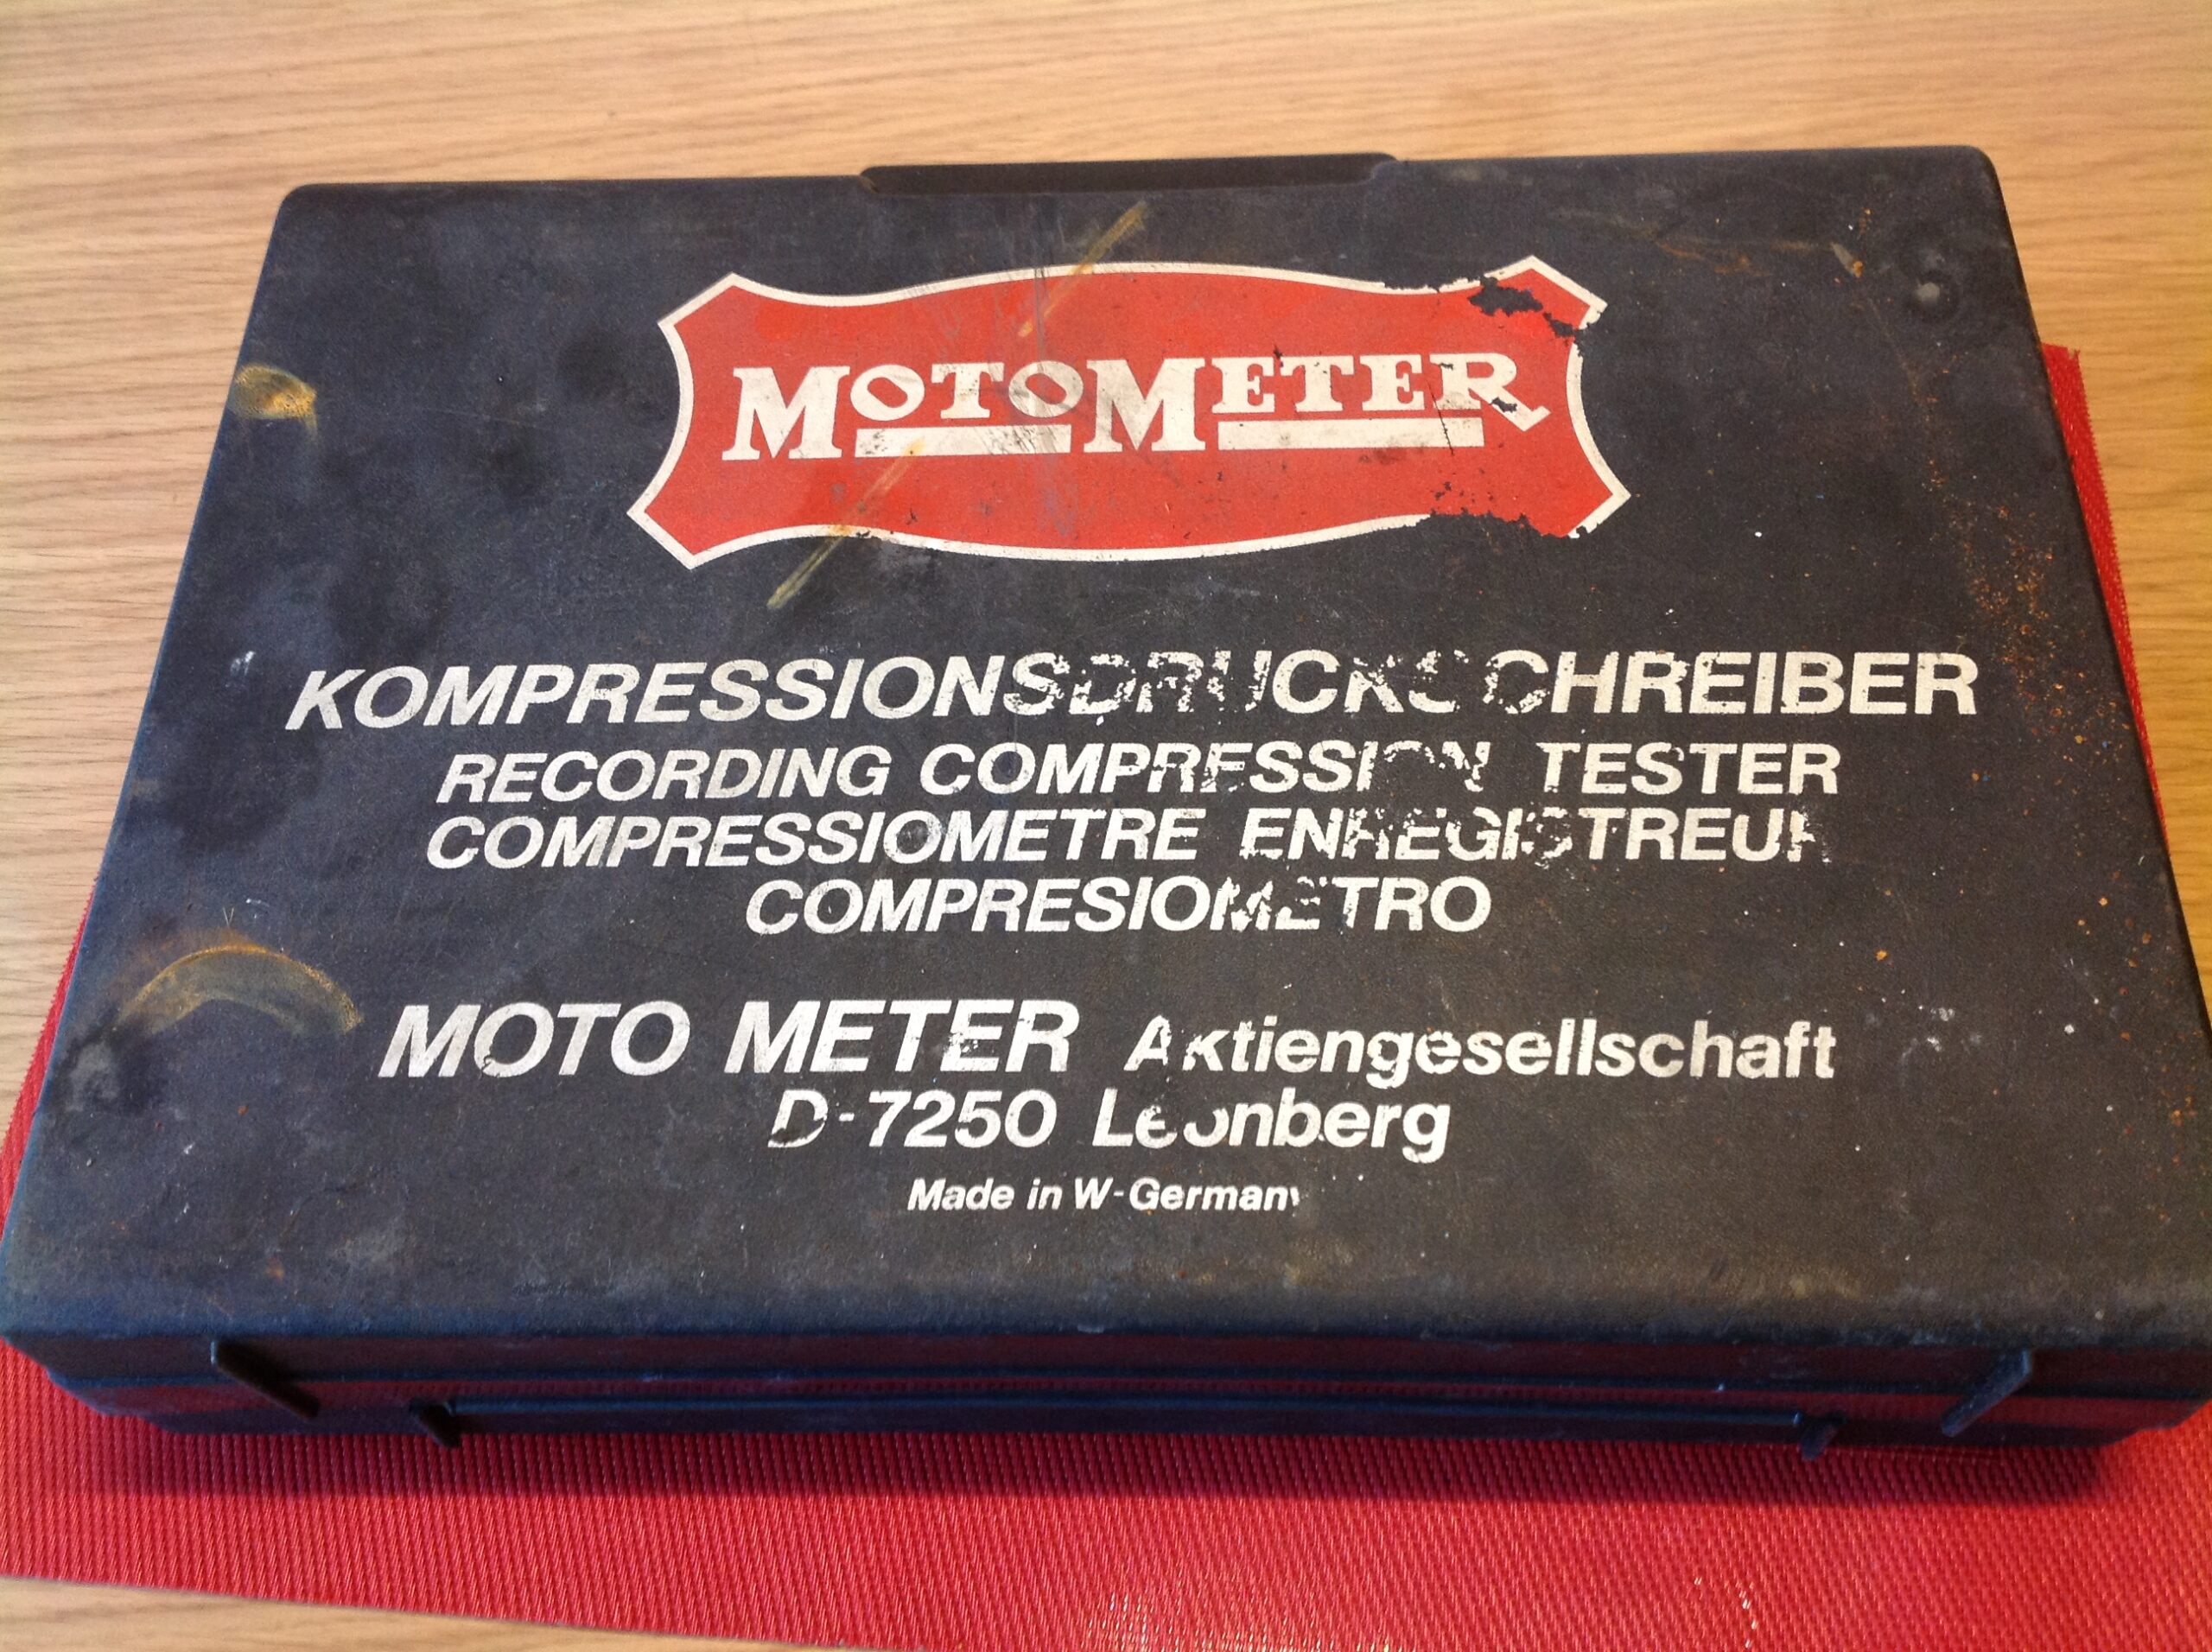 MotoMeter Kompressionsdruckschreiber